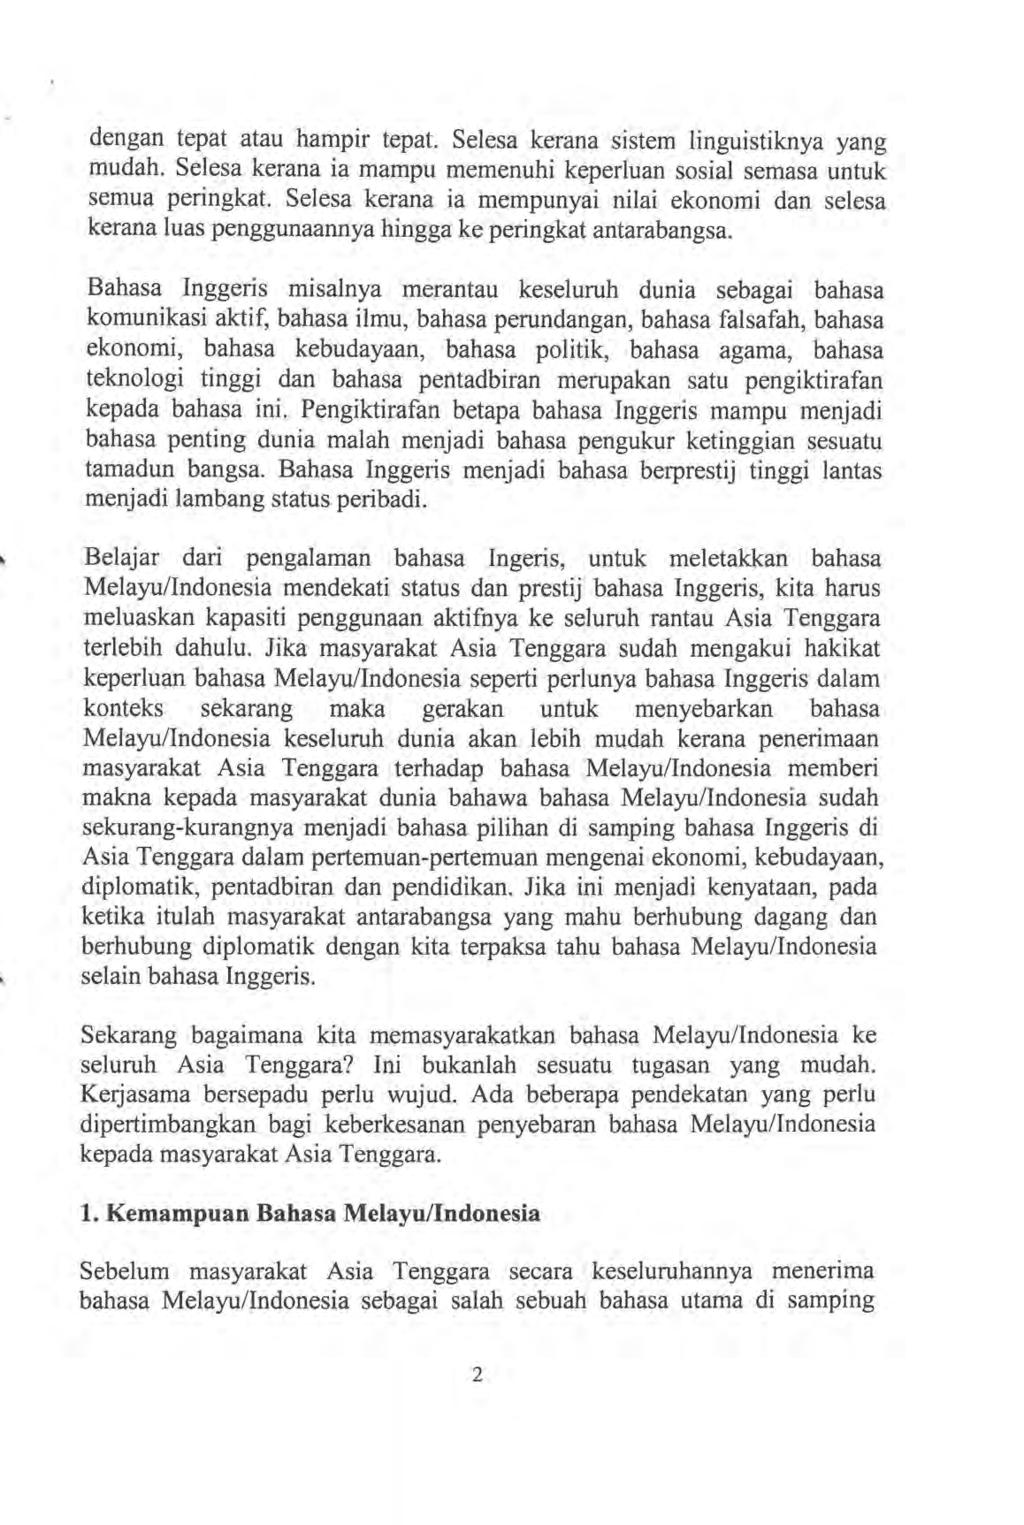 Pemodelan Prosodi Secara Otomatis Menggunakan Jaringan Sy Araf Tiruan Studi Kasus Bahasa Indonesia Oleh Arry Akhmad Arman 1 Pdf Free Download